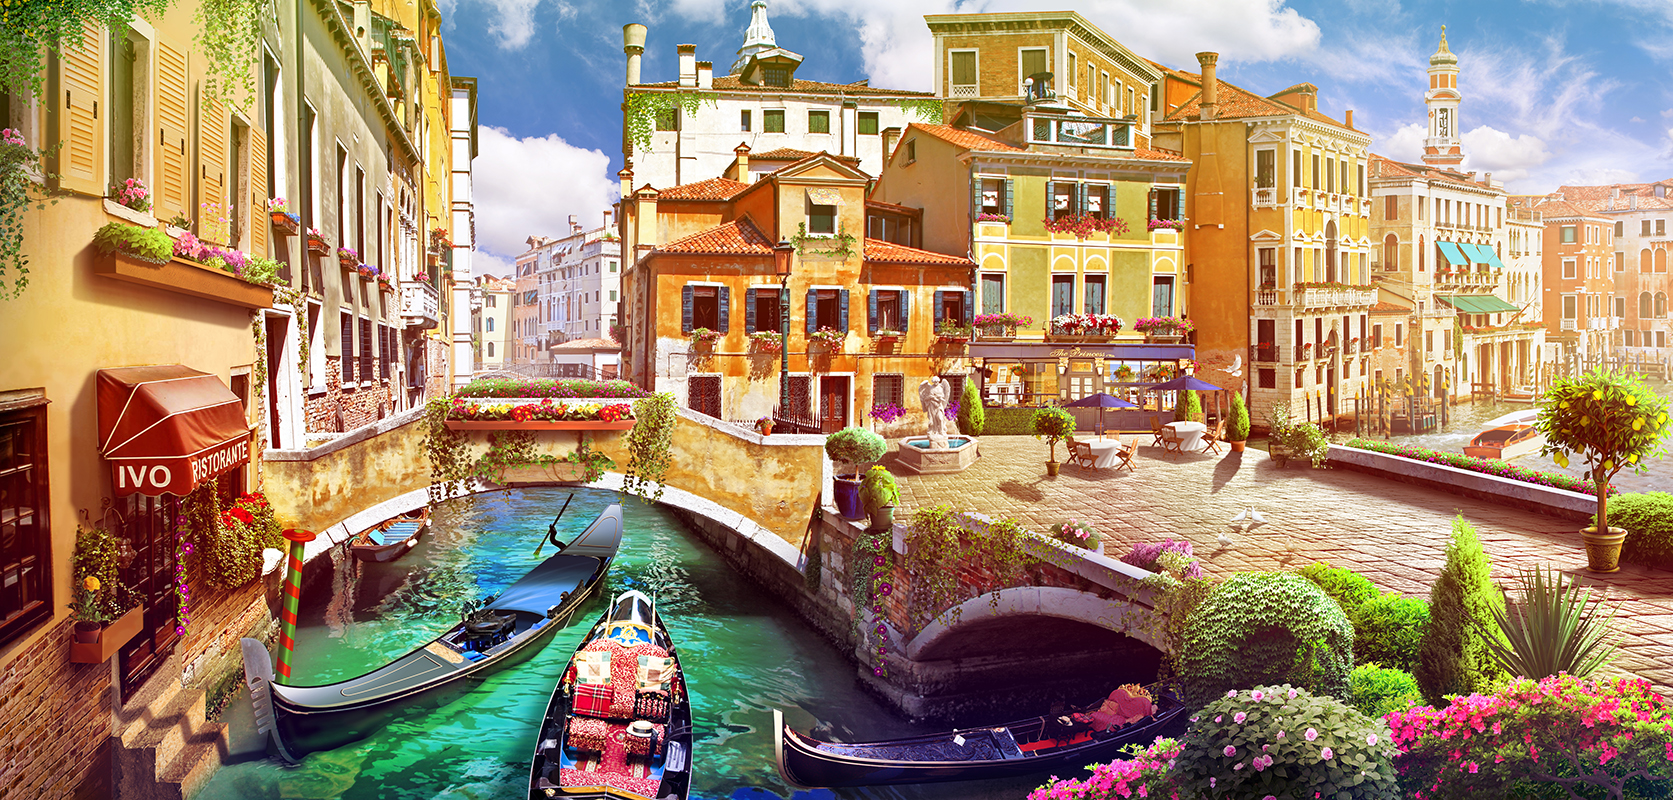 17 Венецианские каналы